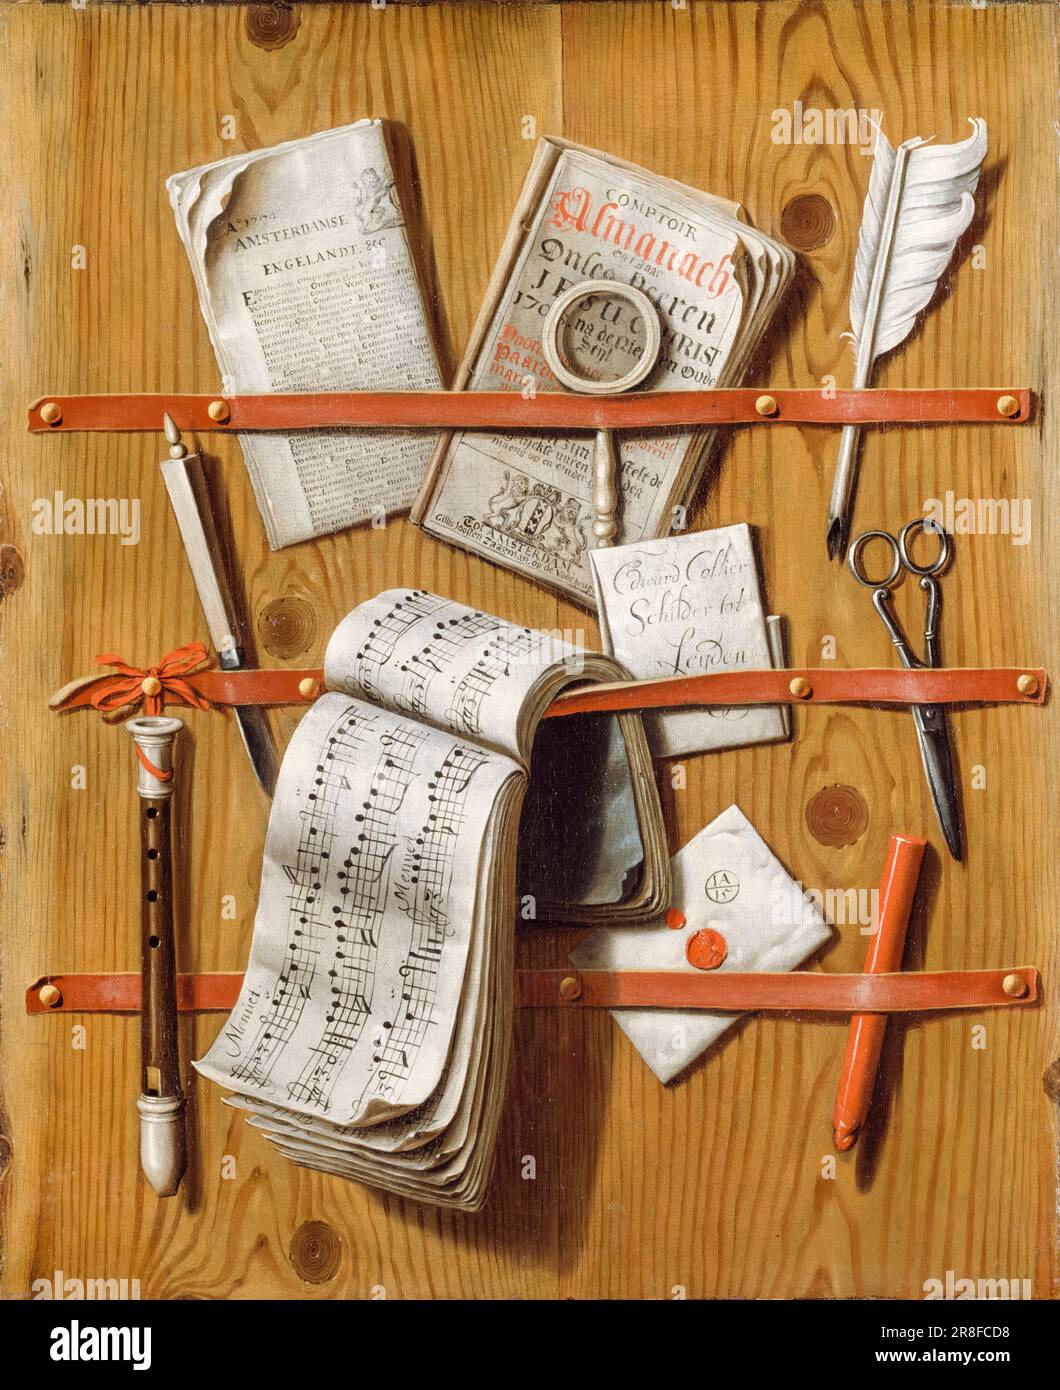 Evert collier, toile de jute, peinture à l'huile sur toile, 1704 Banque D'Images